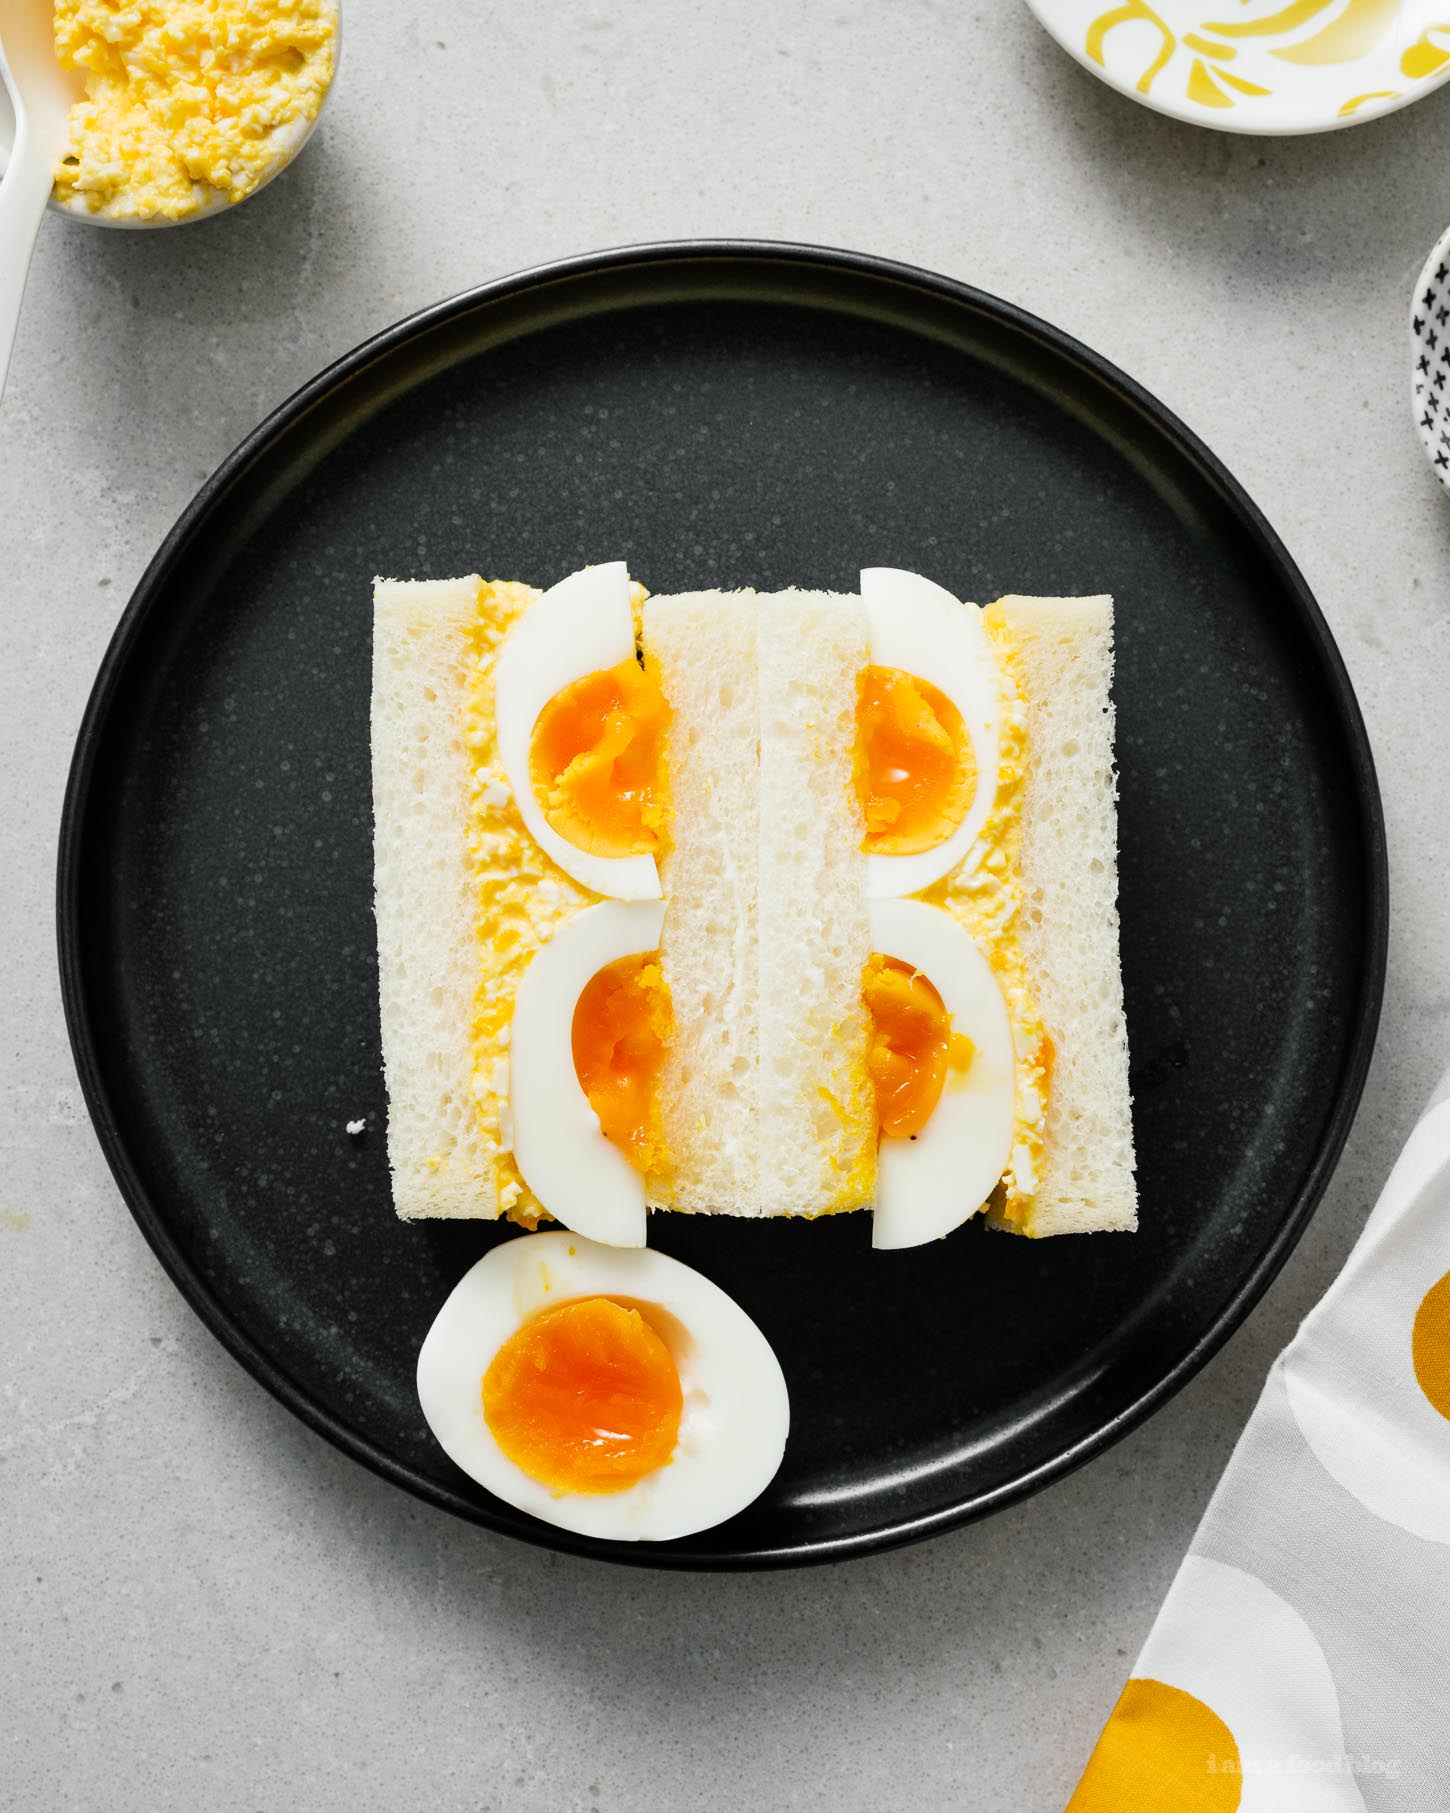 ¡Sándwiches de ensalada de huevo al estilo japonés!  ¿Te encantan los sándwiches de ensalada de huevo para perdértelos?  Debido a la crema y los huevos mao kewpie con mermelada, este sándwich es un ganador.  Como los sándwiches que comiste de vacaciones en Japón, pero mejor;) #sandwiches #eggsalad #japan #japanesefood #recipes #recipeoftheday #huevos